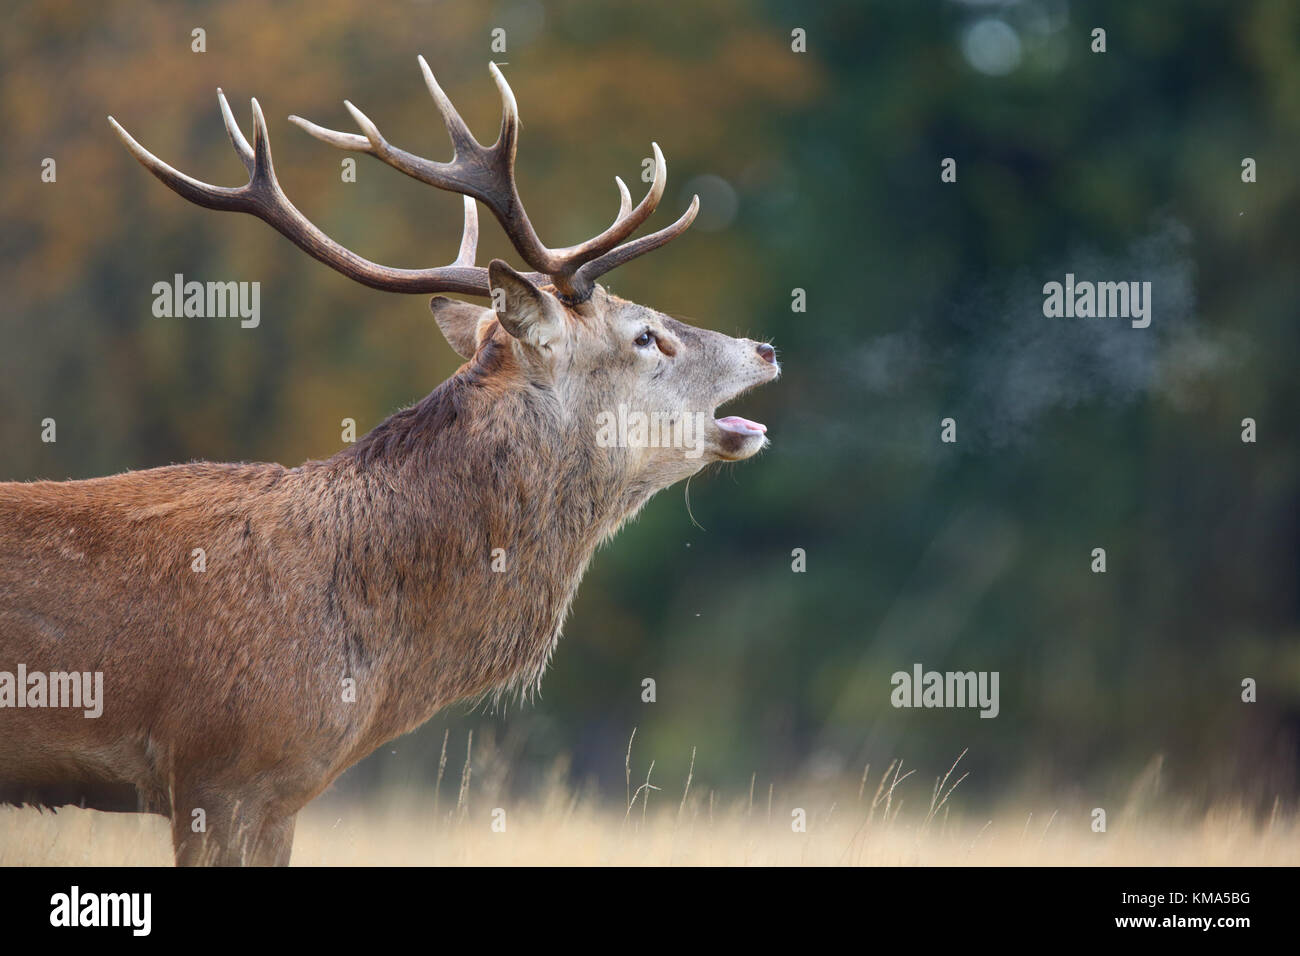 Ciervo rojo (Cervus elaphus) stag, rugiendo durante la rutina con la condensación de la respiración en el aire frío, el Richmond Park, Richmond Upon Thames, Londres, Inglaterra, Octubre Foto de stock